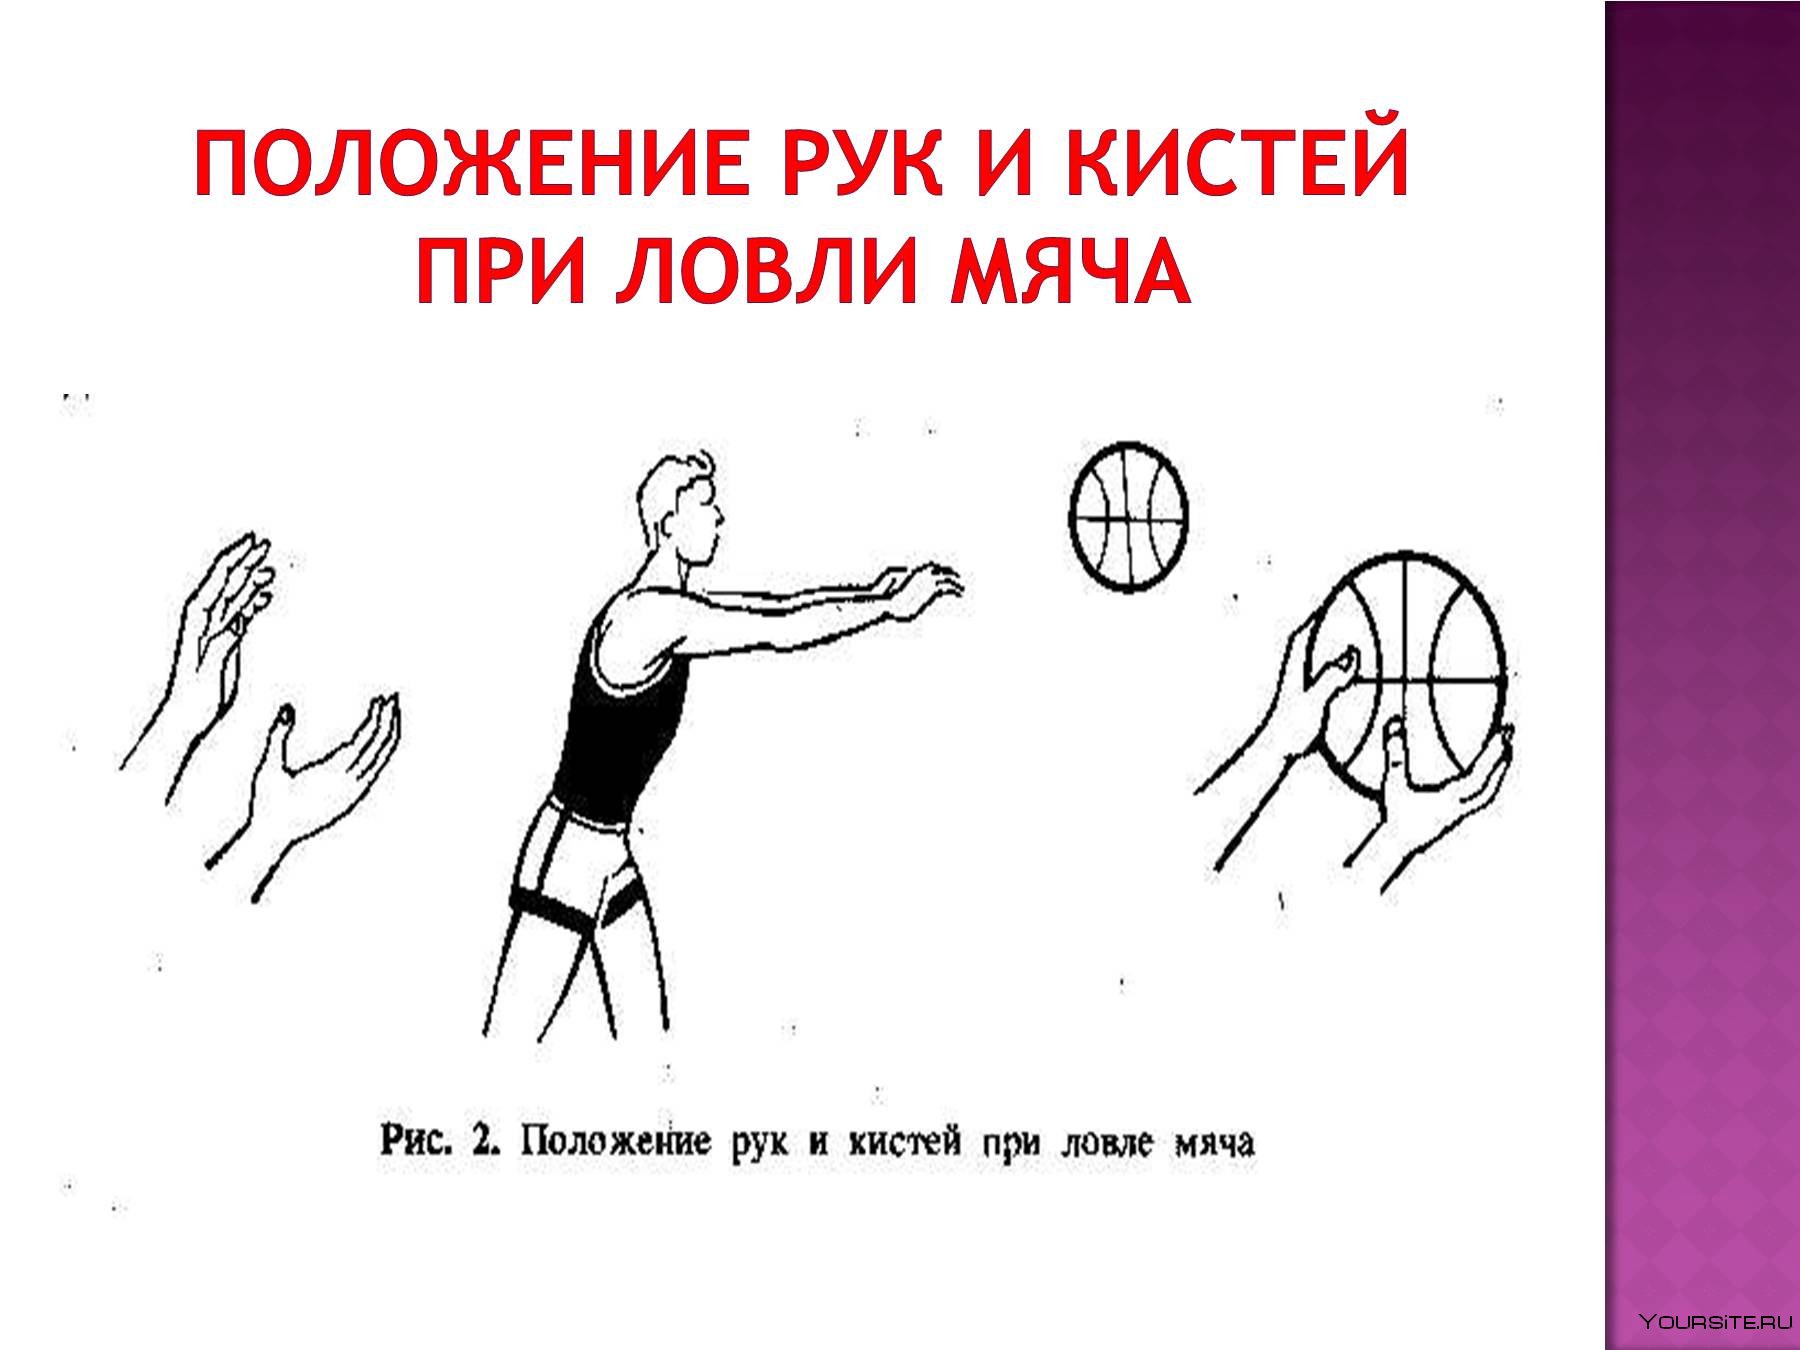 Передача мяча в баскетболе упражнения. Техника передачи мяча от груди.баскетбол двумя. Техника передачи баскетбольного мяча двумя руками. Ловля и передача мяча в движении в баскетболе. Техника ловли мяча в баскетболе.